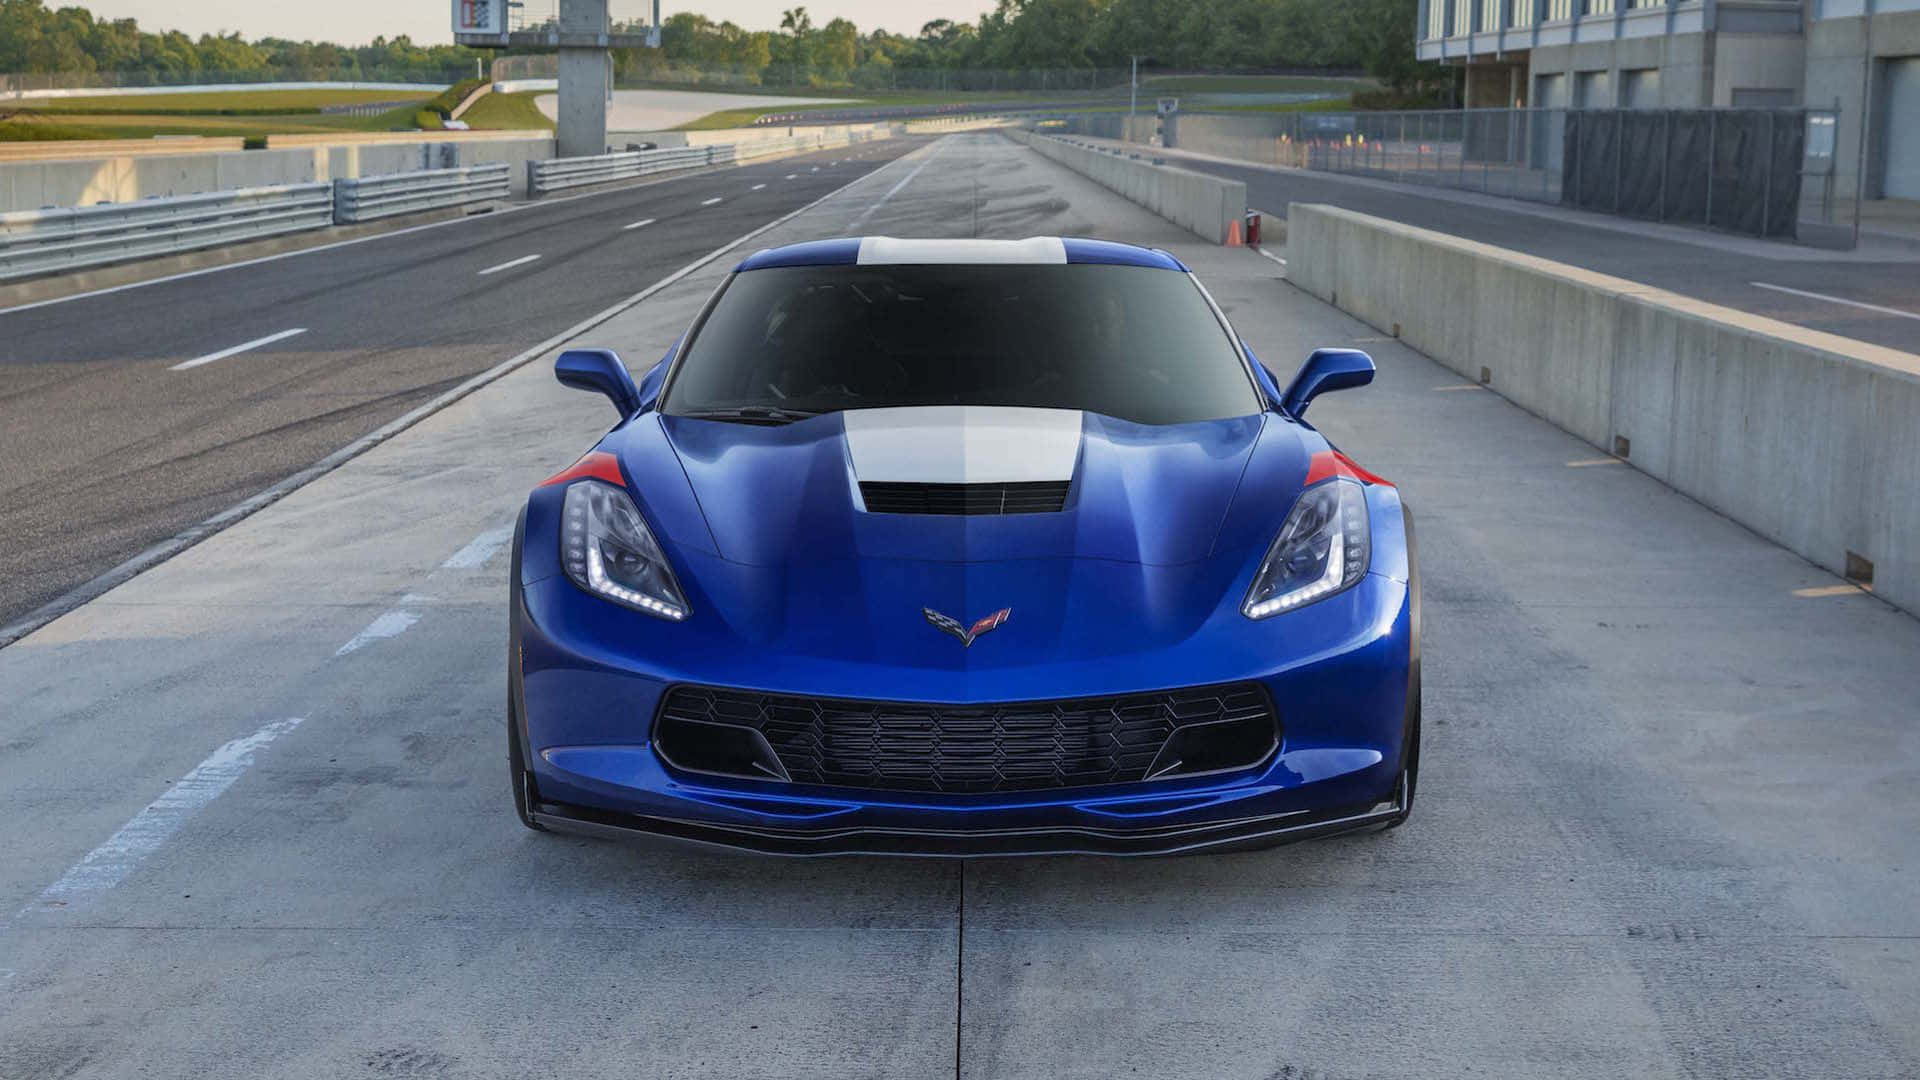 Stunning Chevrolet Corvette Grand Sport in Motion Wallpaper